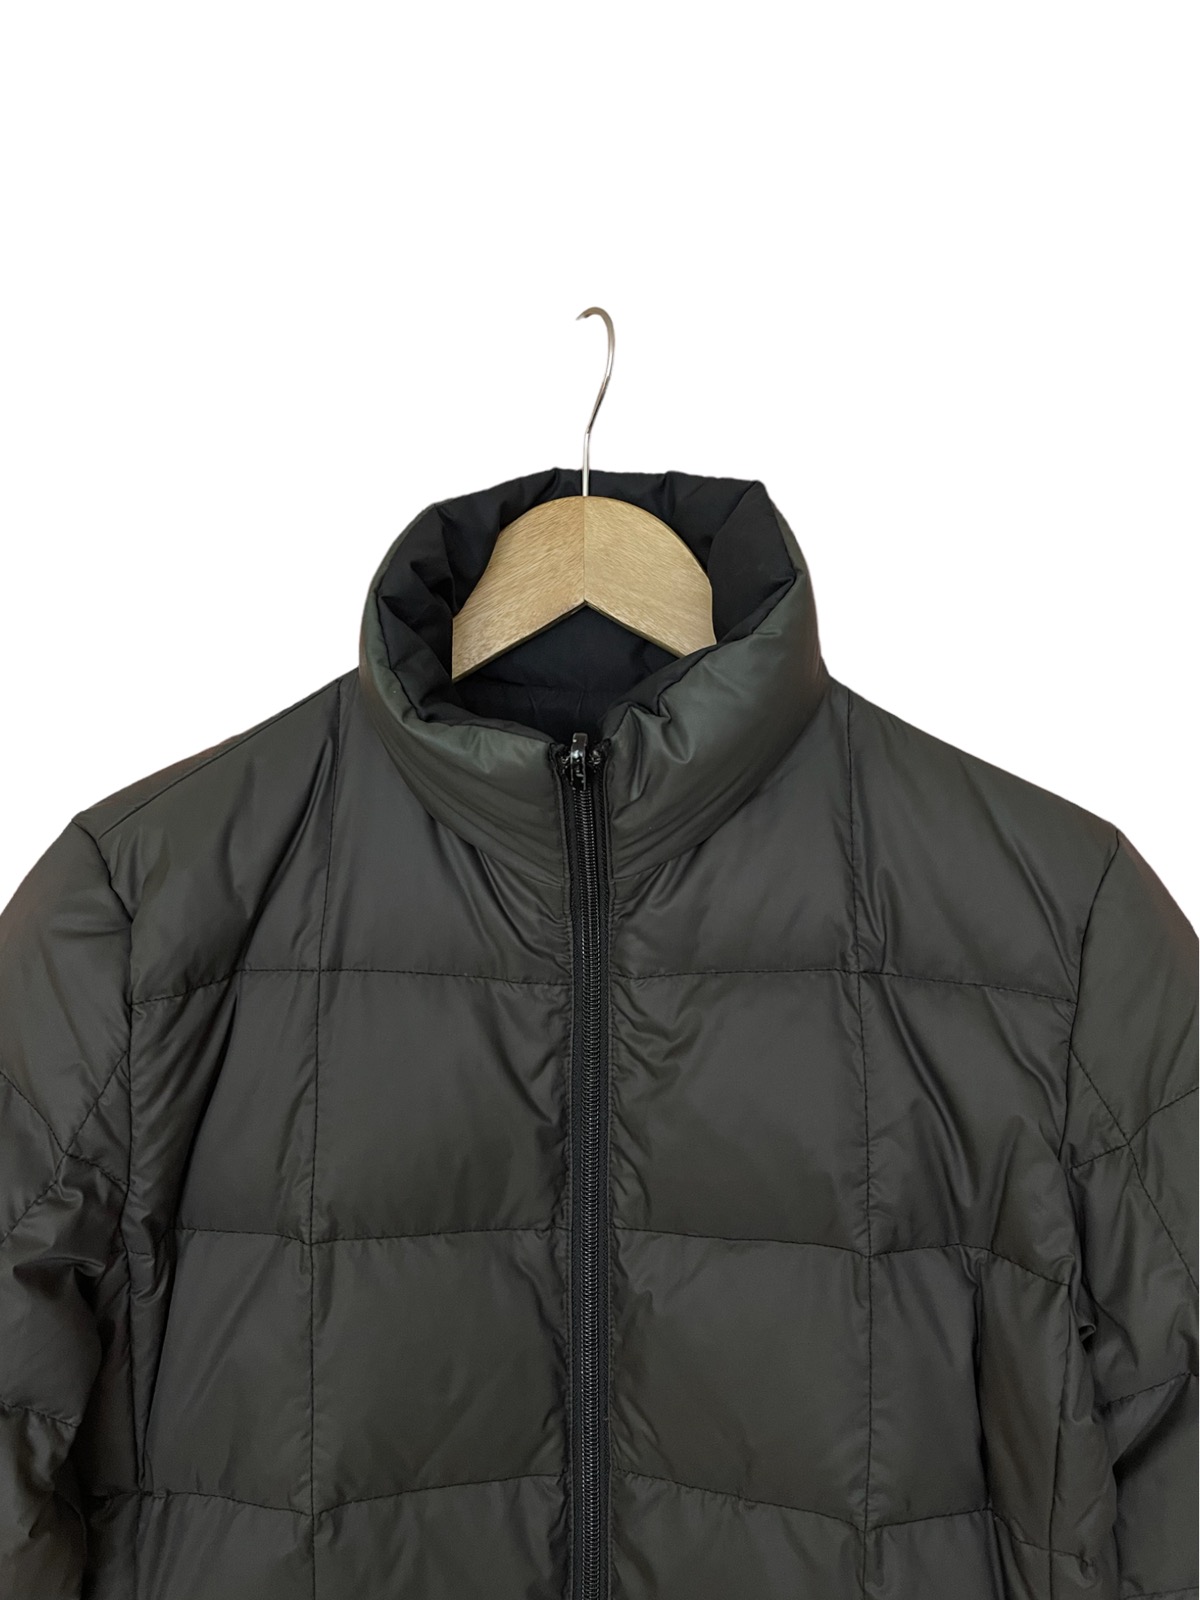 Moncler long puffer jacket reversible down jacket - 11